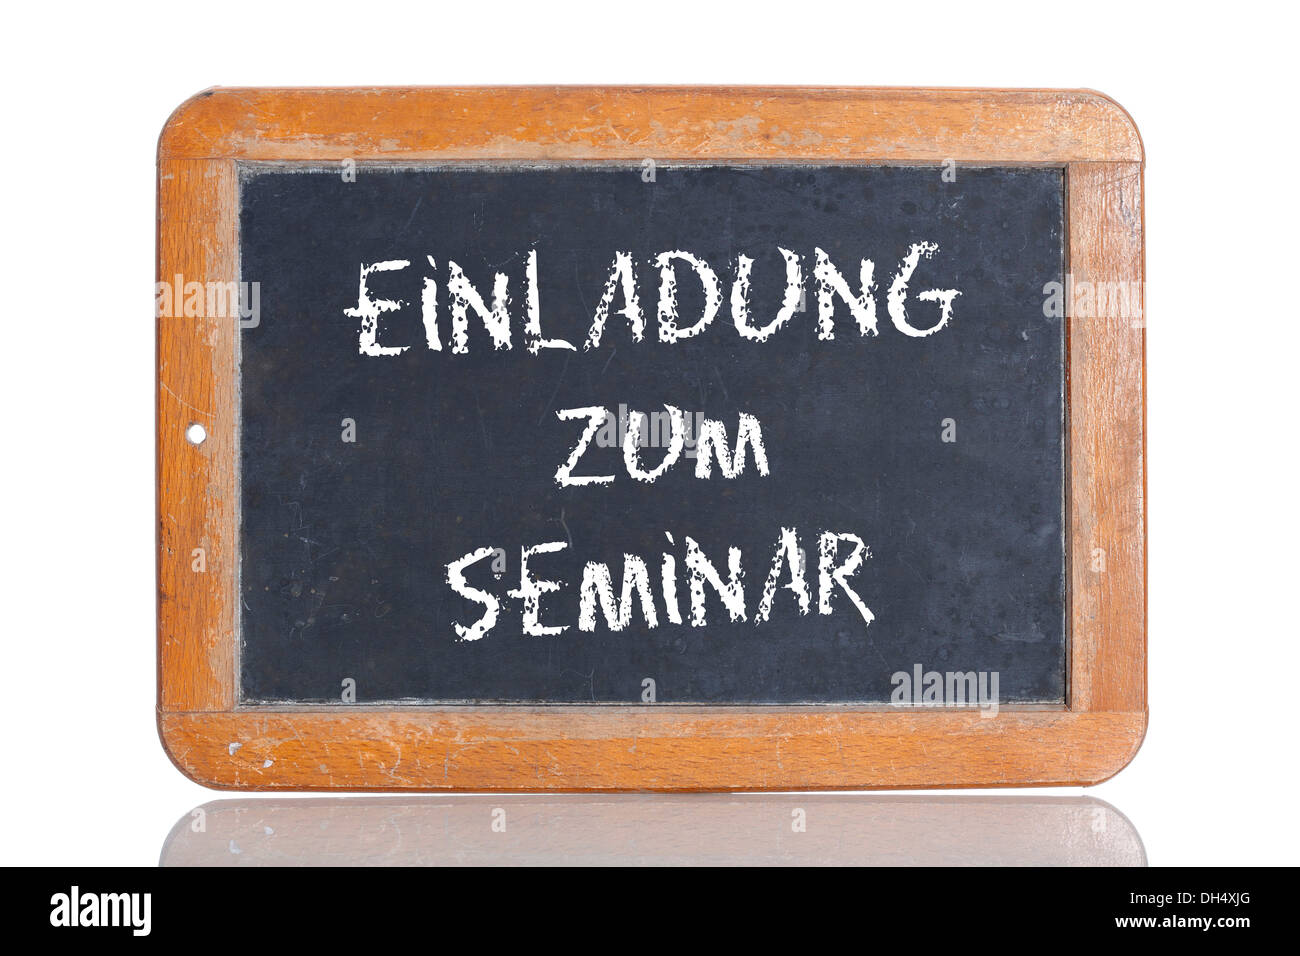 Ancienne école tableau avec les mots EINLADUNG ZUM Séminaire, l'allemand pour Invitation à un séminaire Banque D'Images